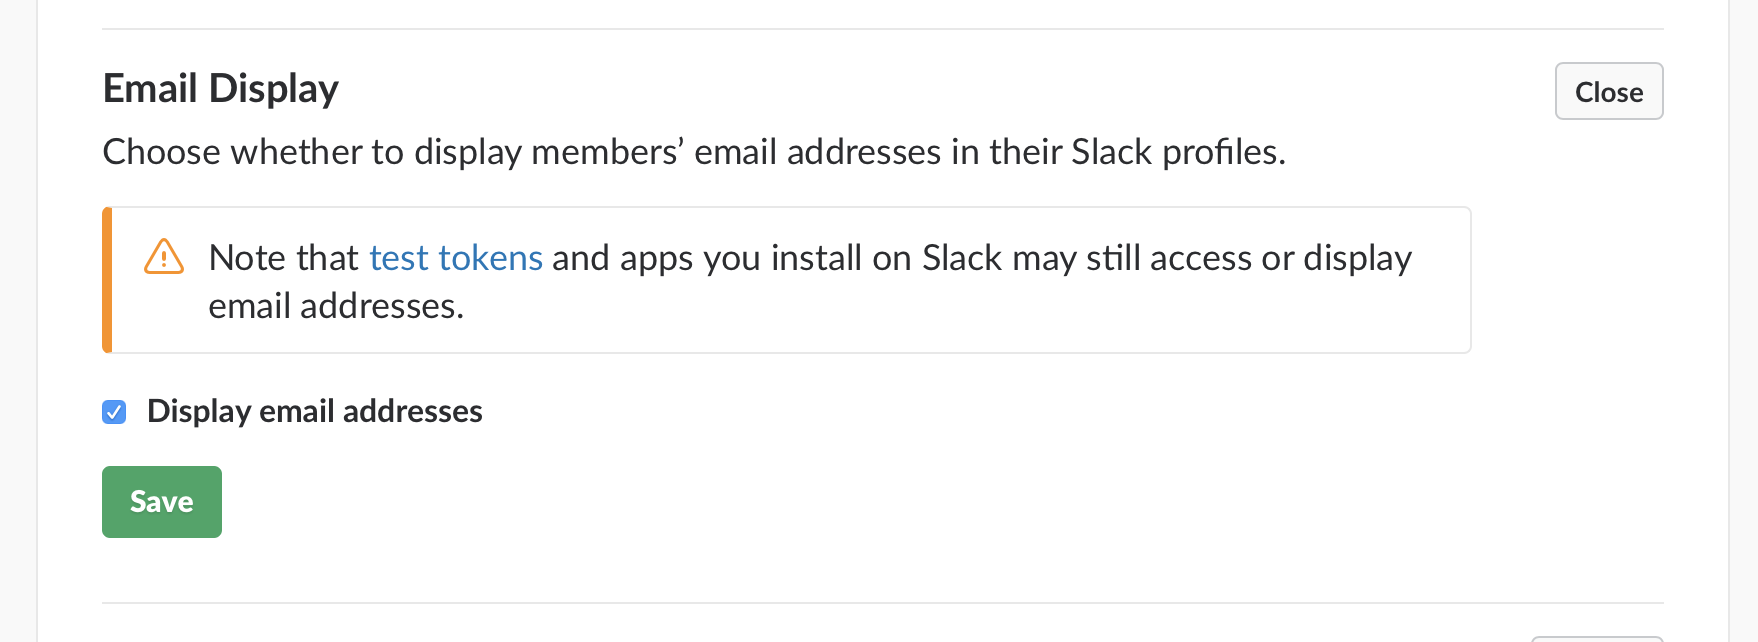 Display emails in Slack.